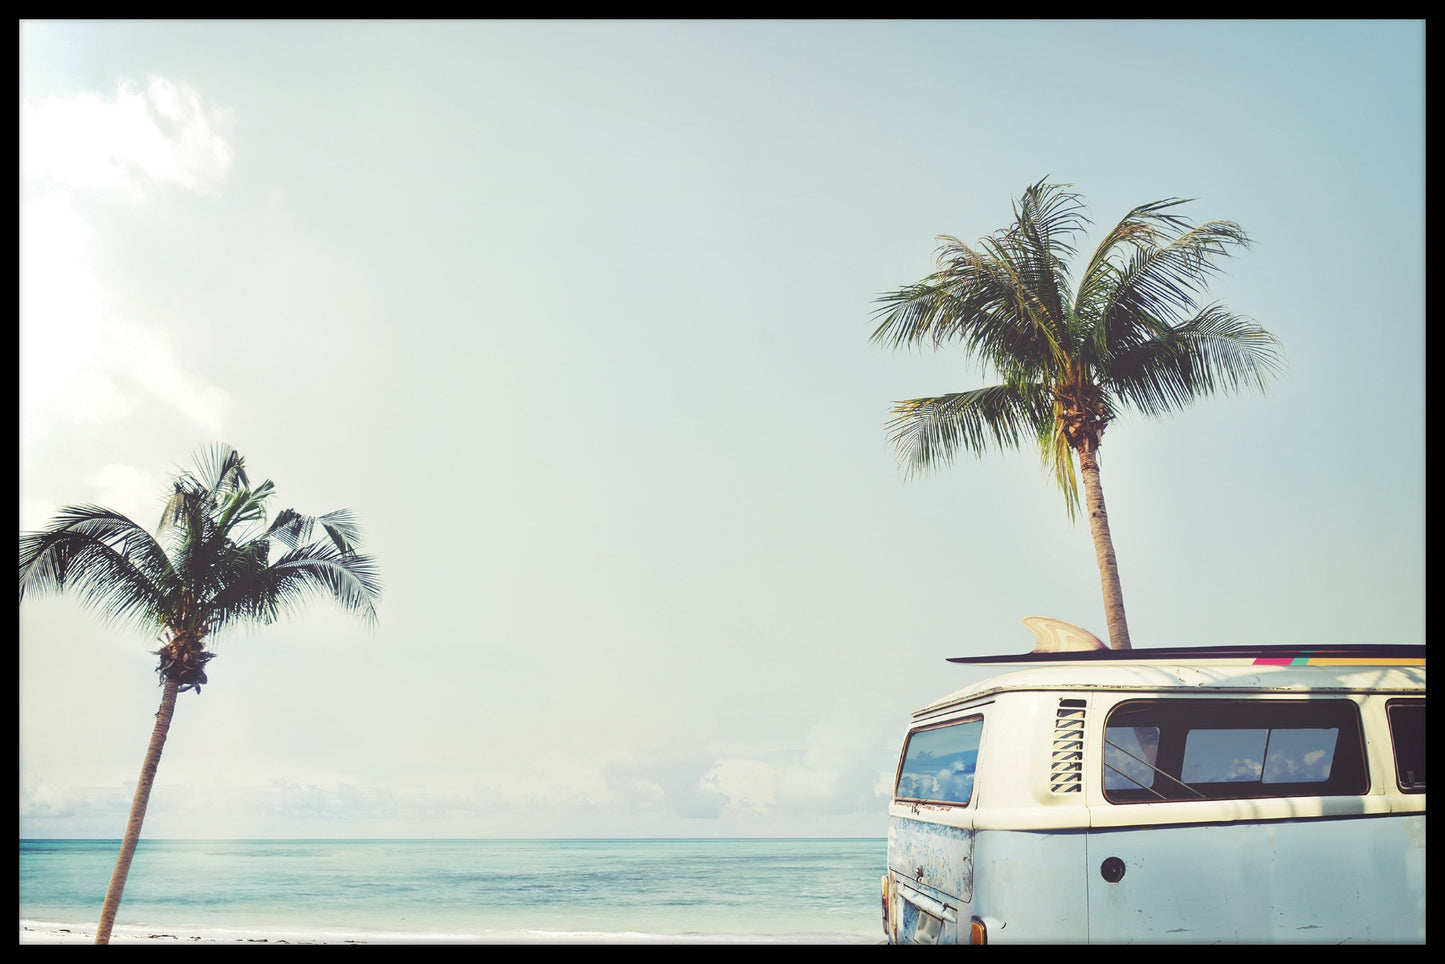  Hippie-Van auf Strandpostern